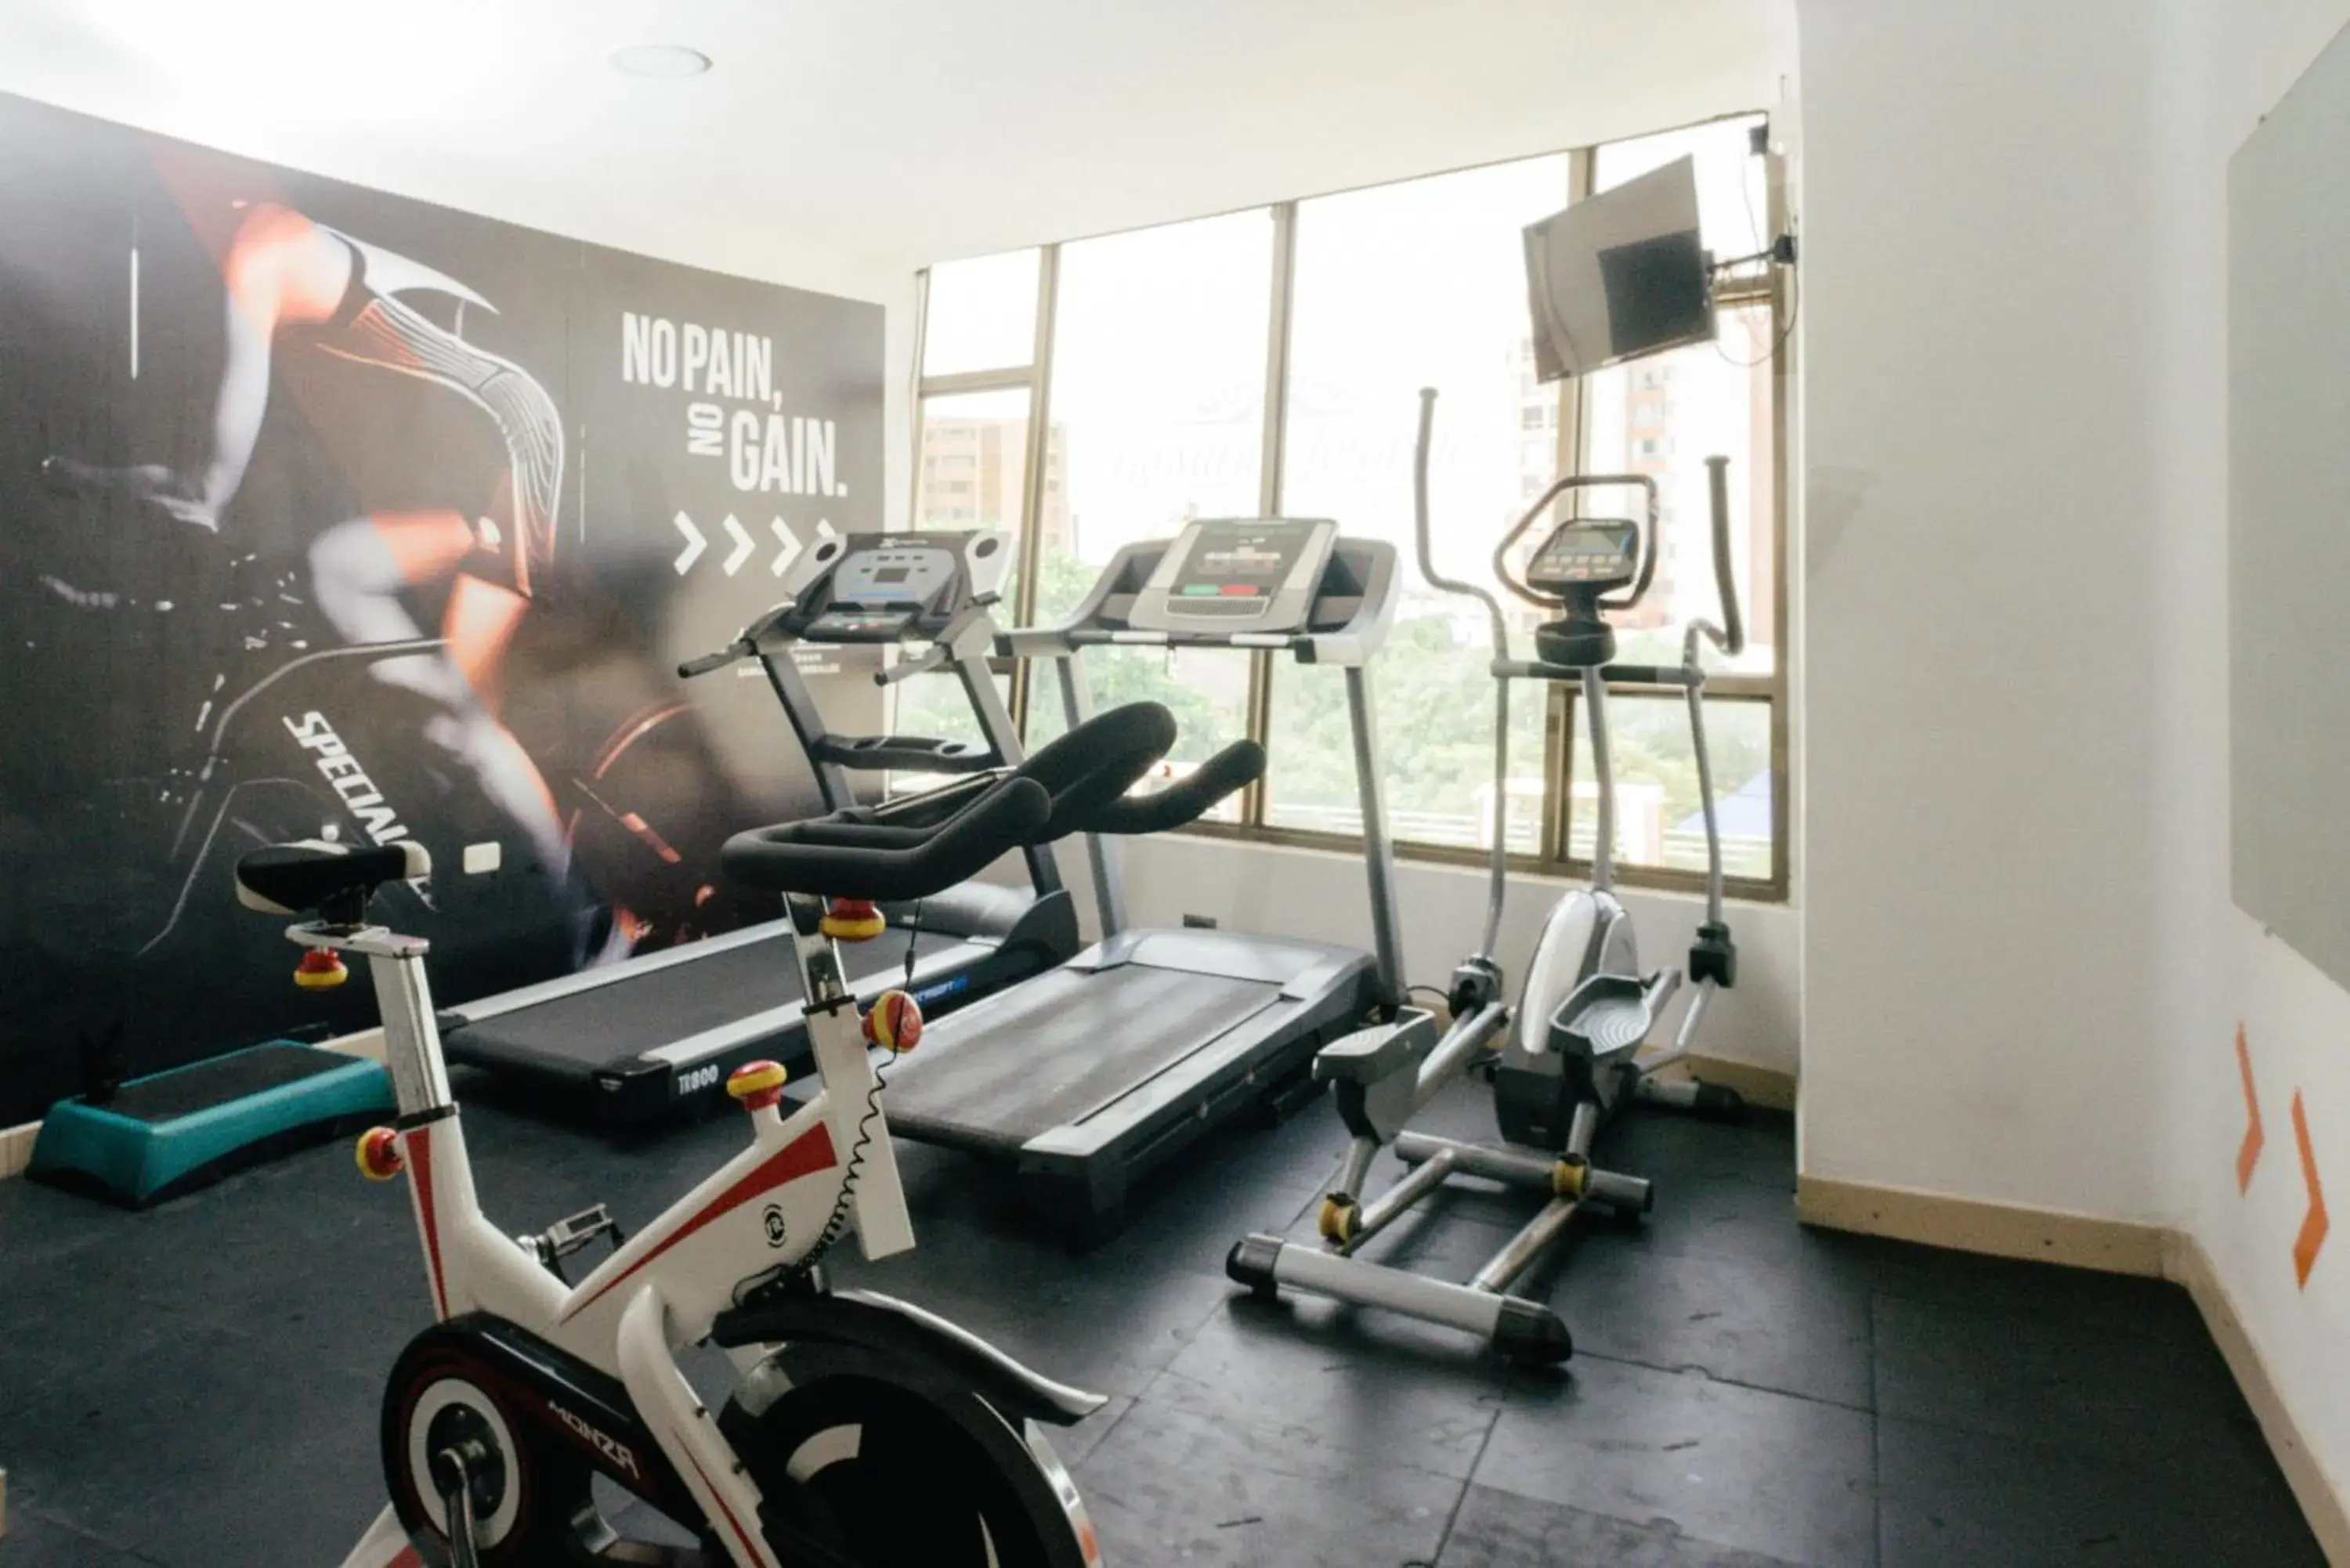 Fitness centre/facilities, Fitness Center/Facilities in Howard Johnson Hotel Versalles Barranquilla